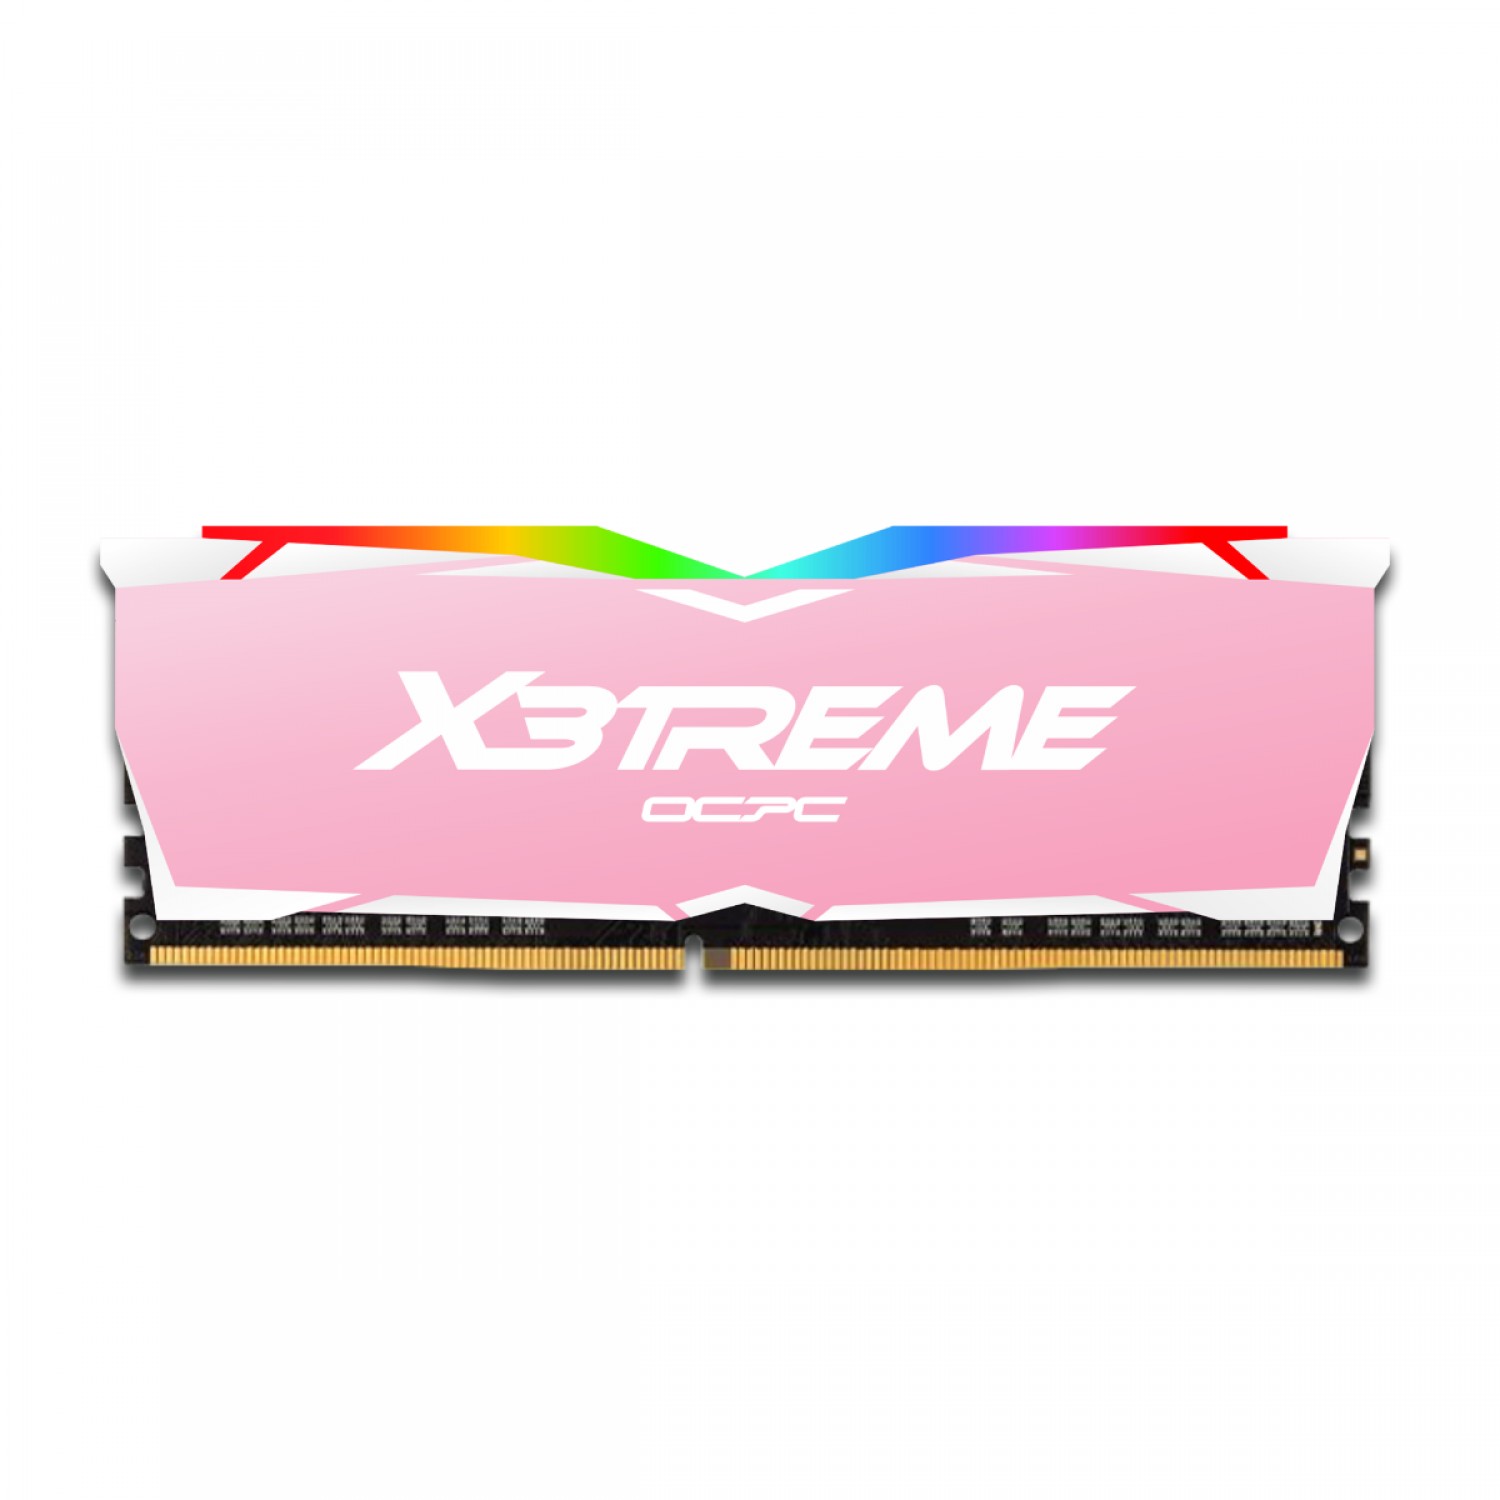 رم OCPC X3TREME RGB 8GB 3000MHz CL16 Single-3